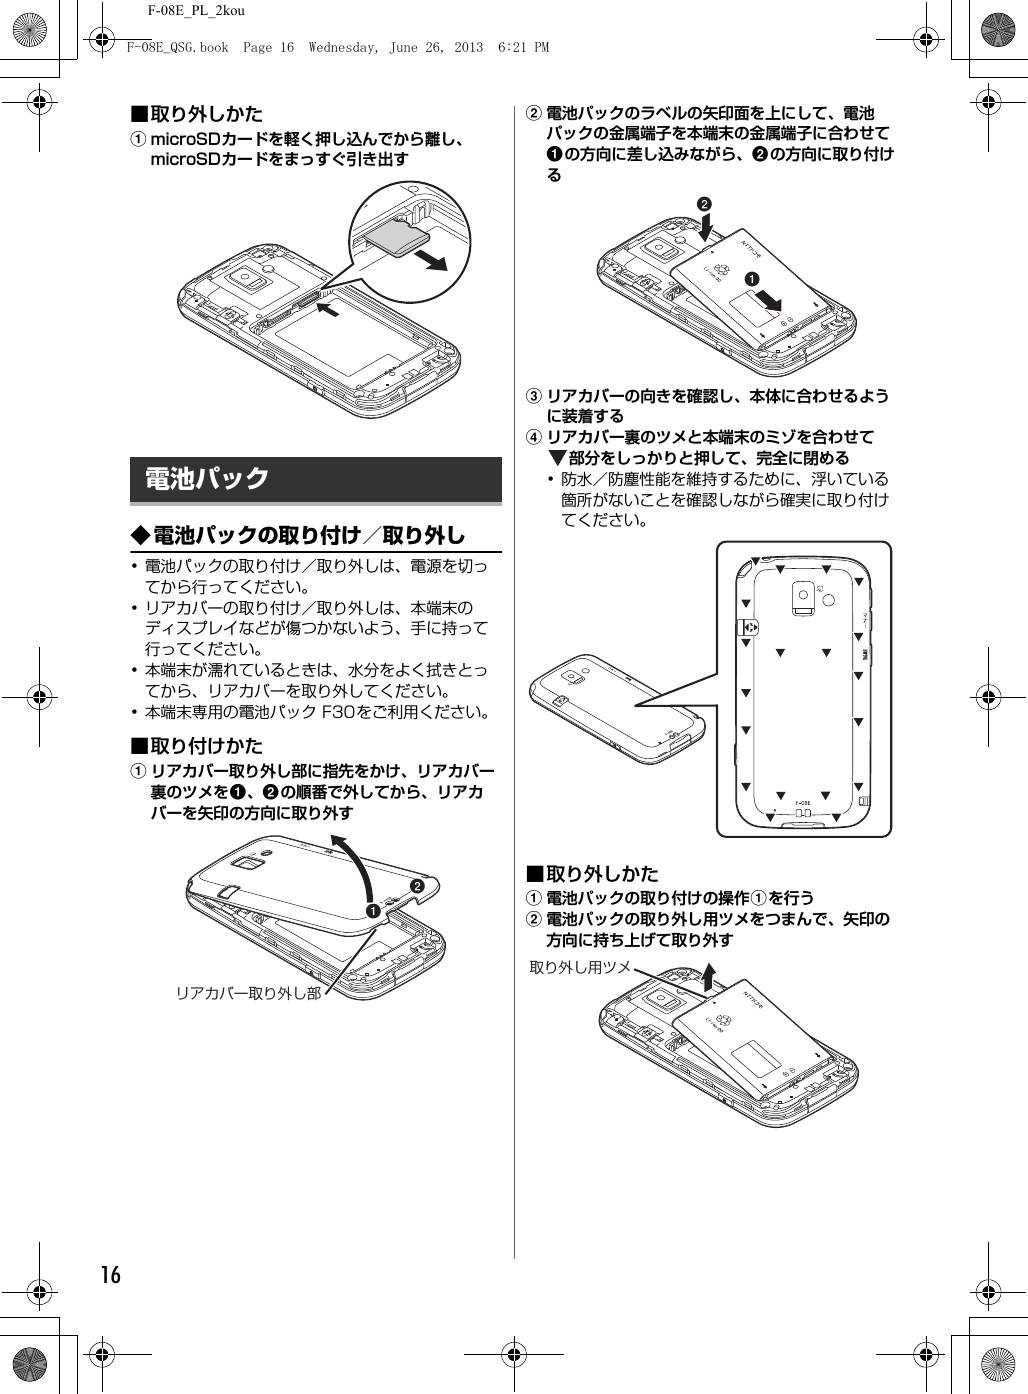 F-08E_PL_2kou16■取り外しかたamicroSDカードを軽く押し込んでから離し、microSDカードをまっすぐ引き出す◆電池パックの取り付け／取り外し･電池パックの取り付け／取り外しは、電源を切ってから行ってください。･リアカバーの取り付け／取り外しは、本端末のディスプレイなどが傷つかないよう、手に持って行ってください。･本端末が濡れているときは、水分をよく拭きとってから、リアカバーを取り外してください。･本端末専用の電池パック F30をご利用ください。■取り付けかたaリアカバー取り外し部に指先をかけ、リアカバー裏のツメをa、bの順番で外してから、リアカバーを矢印の方向に取り外すb電池パックのラベルの矢印面を上にして、電池パックの金属端子を本端末の金属端子に合わせてaの方向に差し込みながら、bの方向に取り付けるcリアカバーの向きを確認し、本体に合わせるように装着するdリアカバー裏のツメと本端末のミゾを合わせて部分をしっかりと押して、完全に閉める･防水／防塵性能を維持するために、浮いている箇所がないことを確認しながら確実に取り付けてください。■取り外しかたa電池パックの取り付けの操作aを行うb電池パックの取り外し用ツメをつまんで、矢印の方向に持ち上げて取り外す電池パックabリアカバー取り外し部ab取り外し用ツメF-08E_QSG.book  Page 16  Wednesday, June 26, 2013  6:21 PM